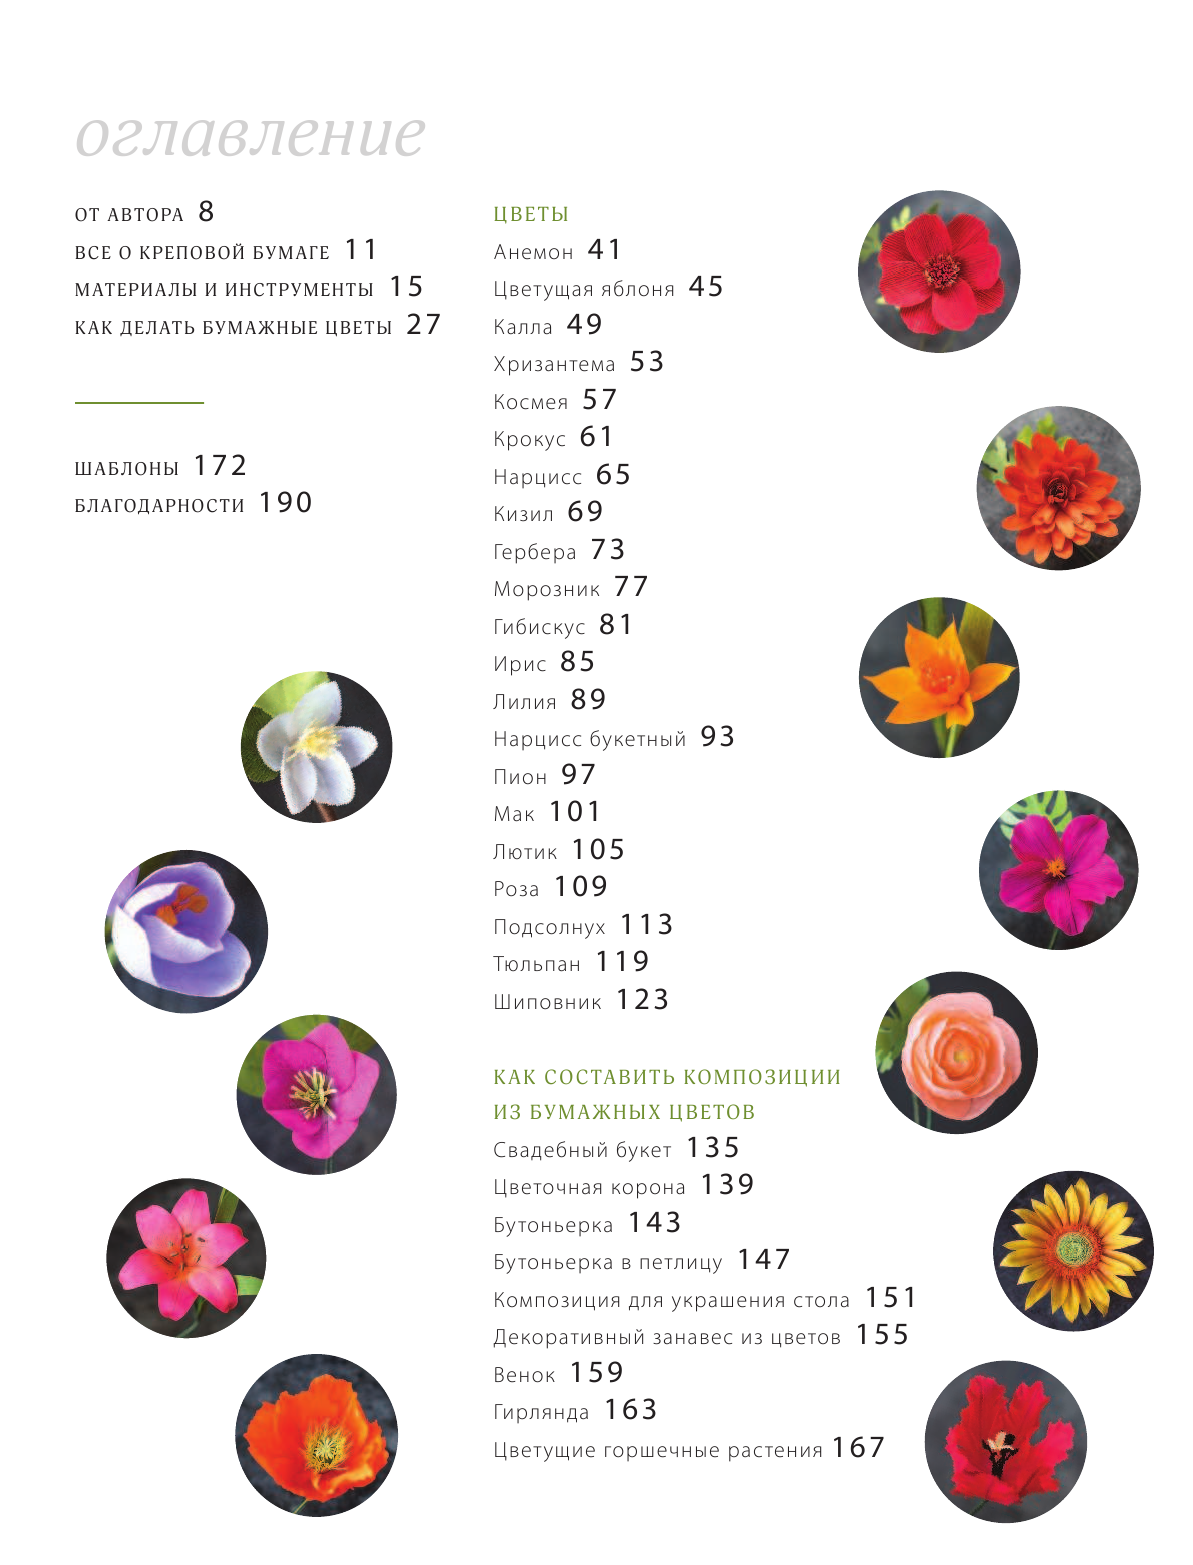 Всем цветы! Роскошные цветочные композиции из бумаги. Практическое руководство для начинающих - фото №5